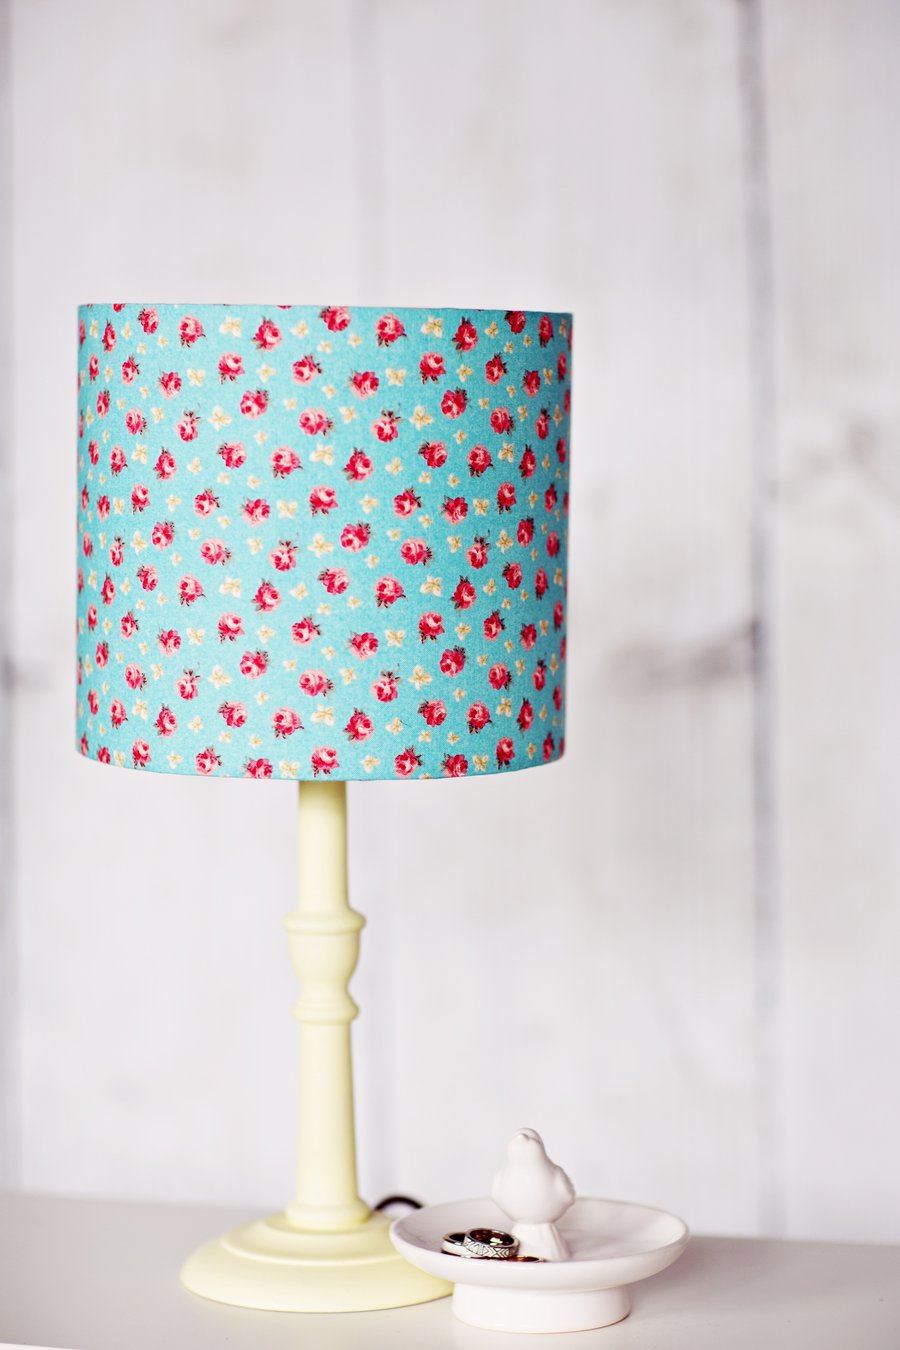 Blue lampshade, rose lamp shade, red rose lamp shade, lampshade, lamp shade